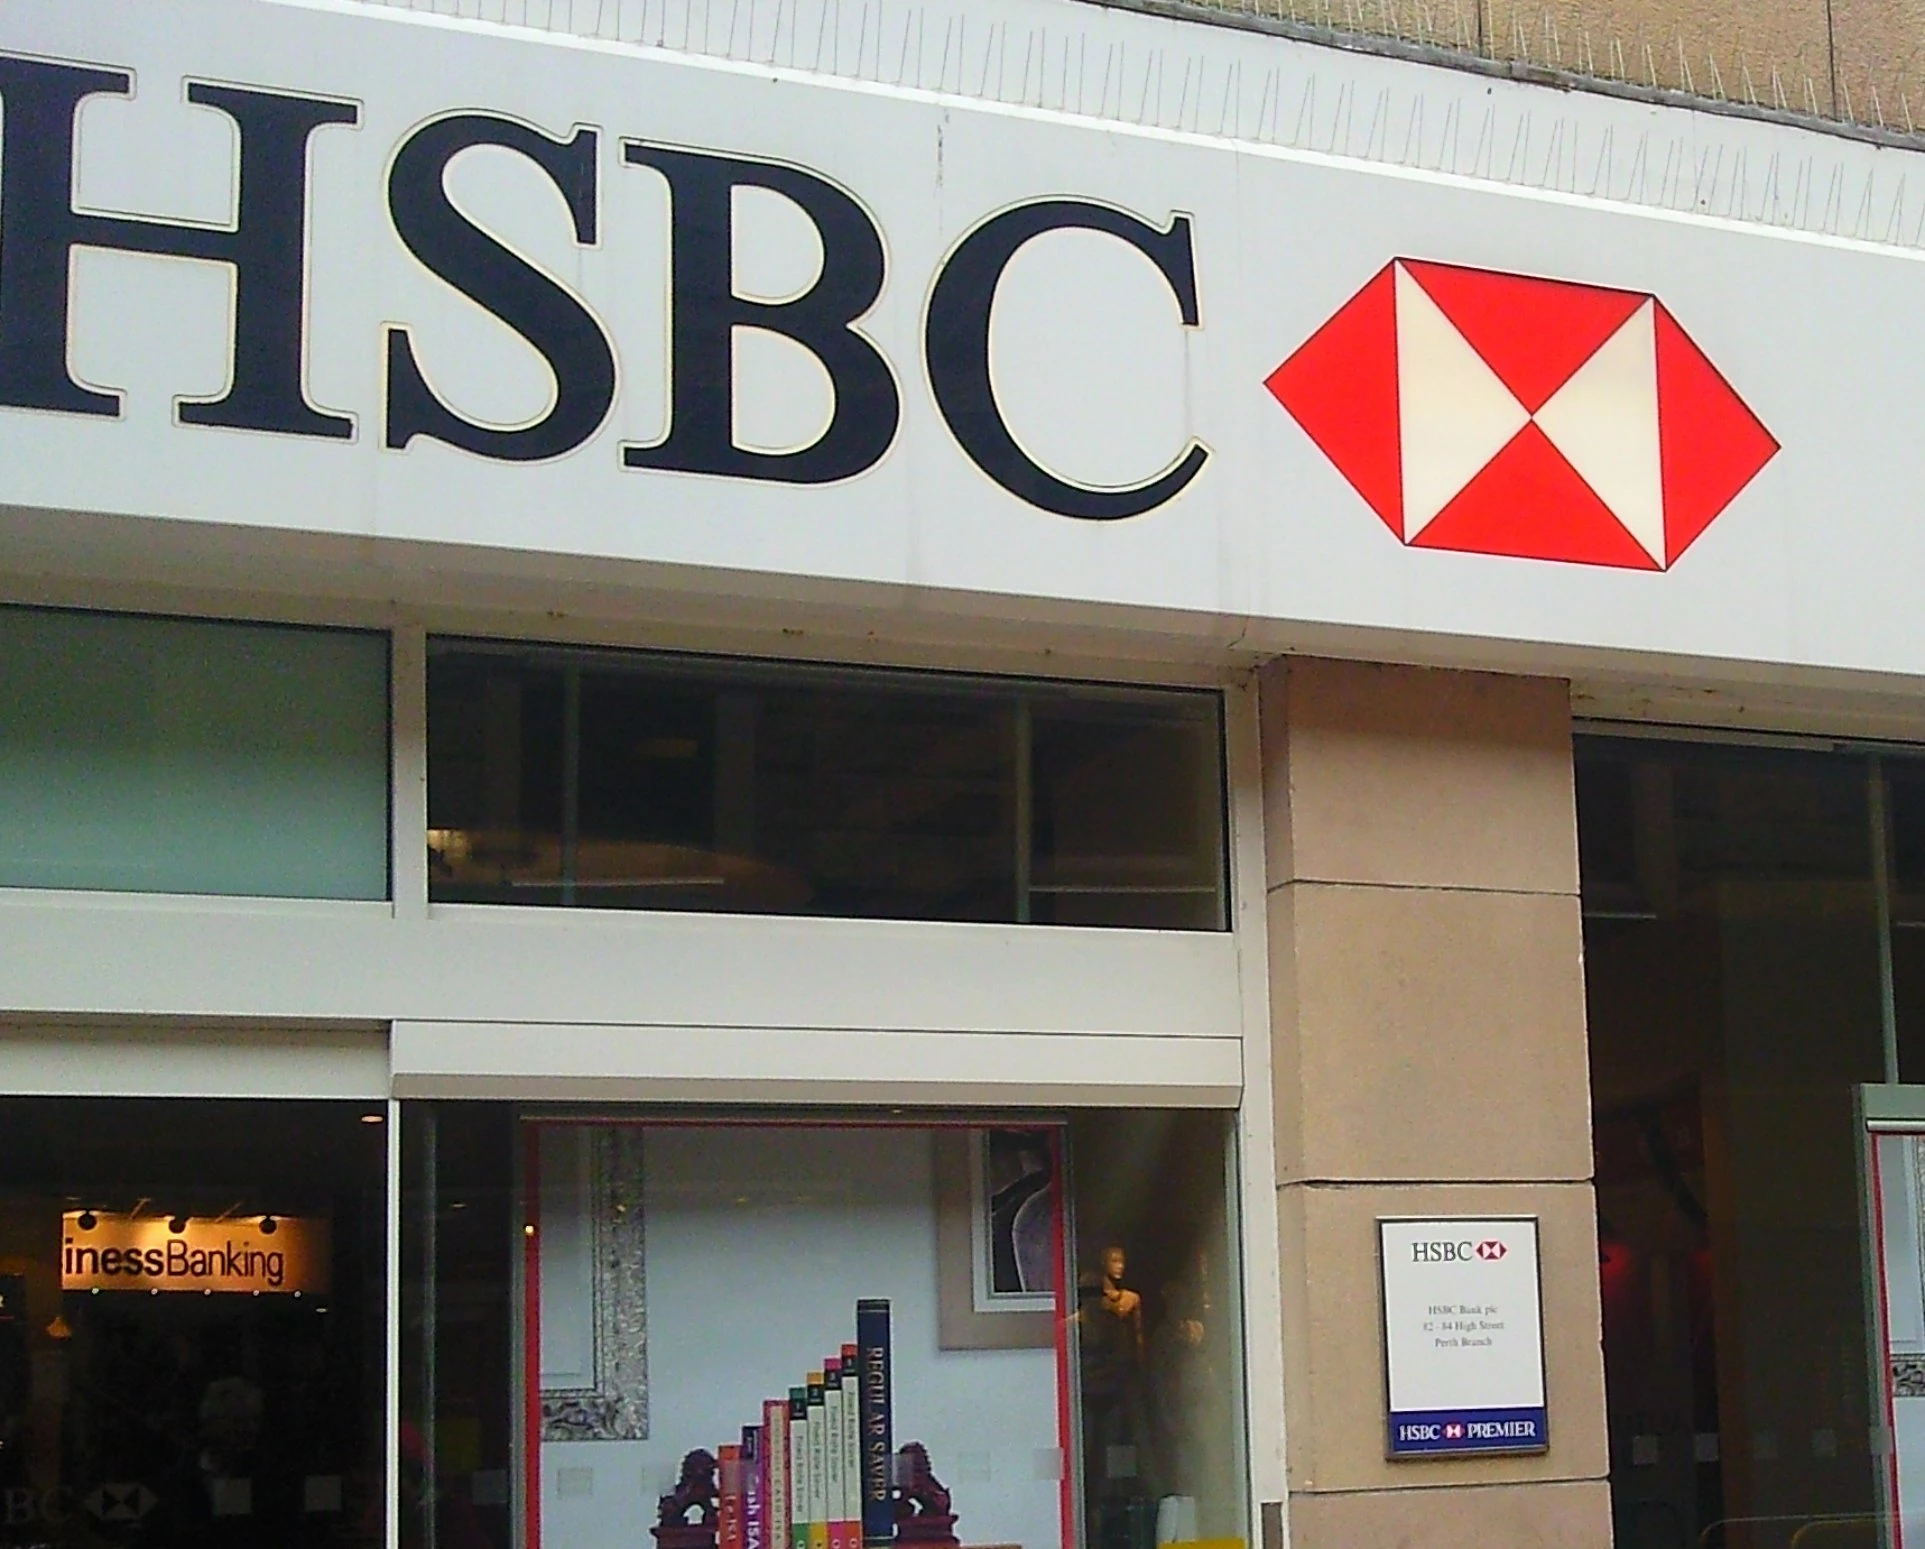 HSBC signage